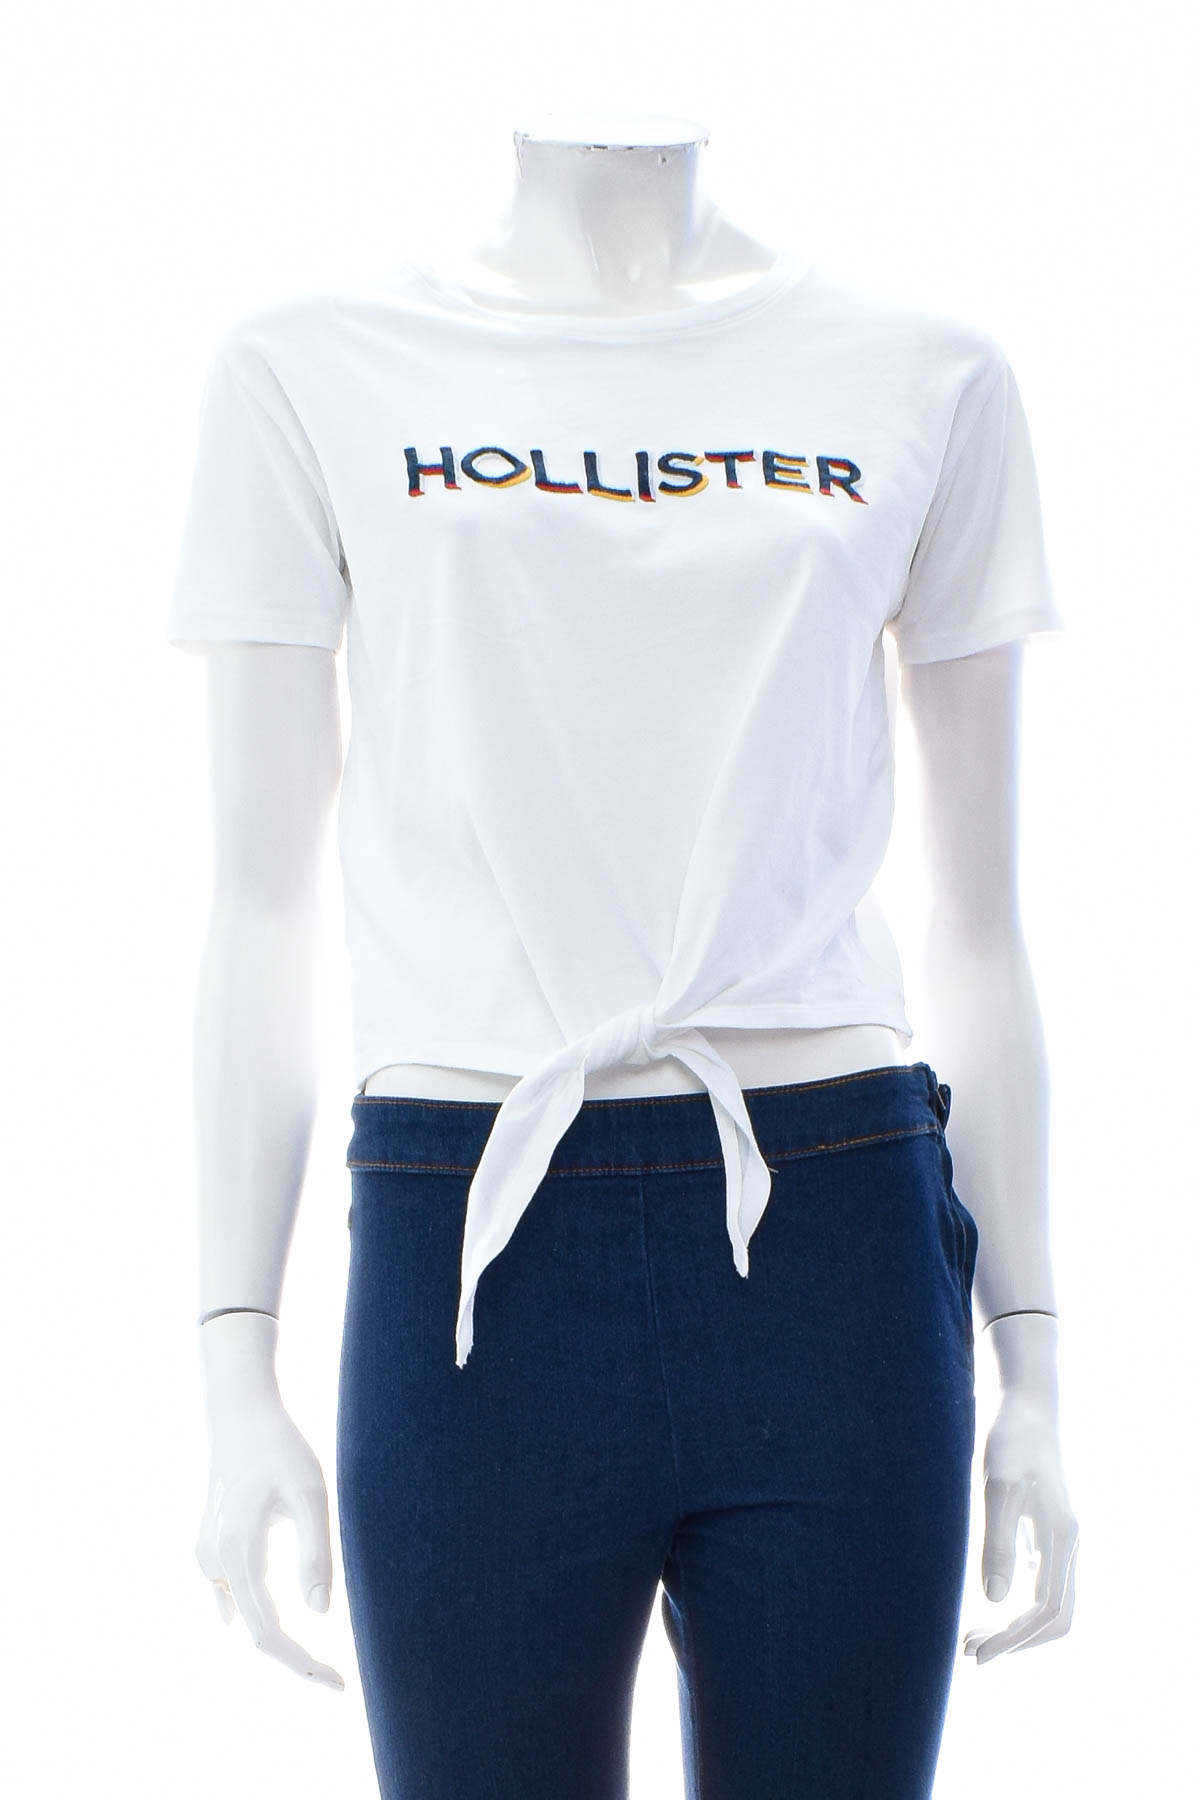 Women's t-shirt - Hollister - 0